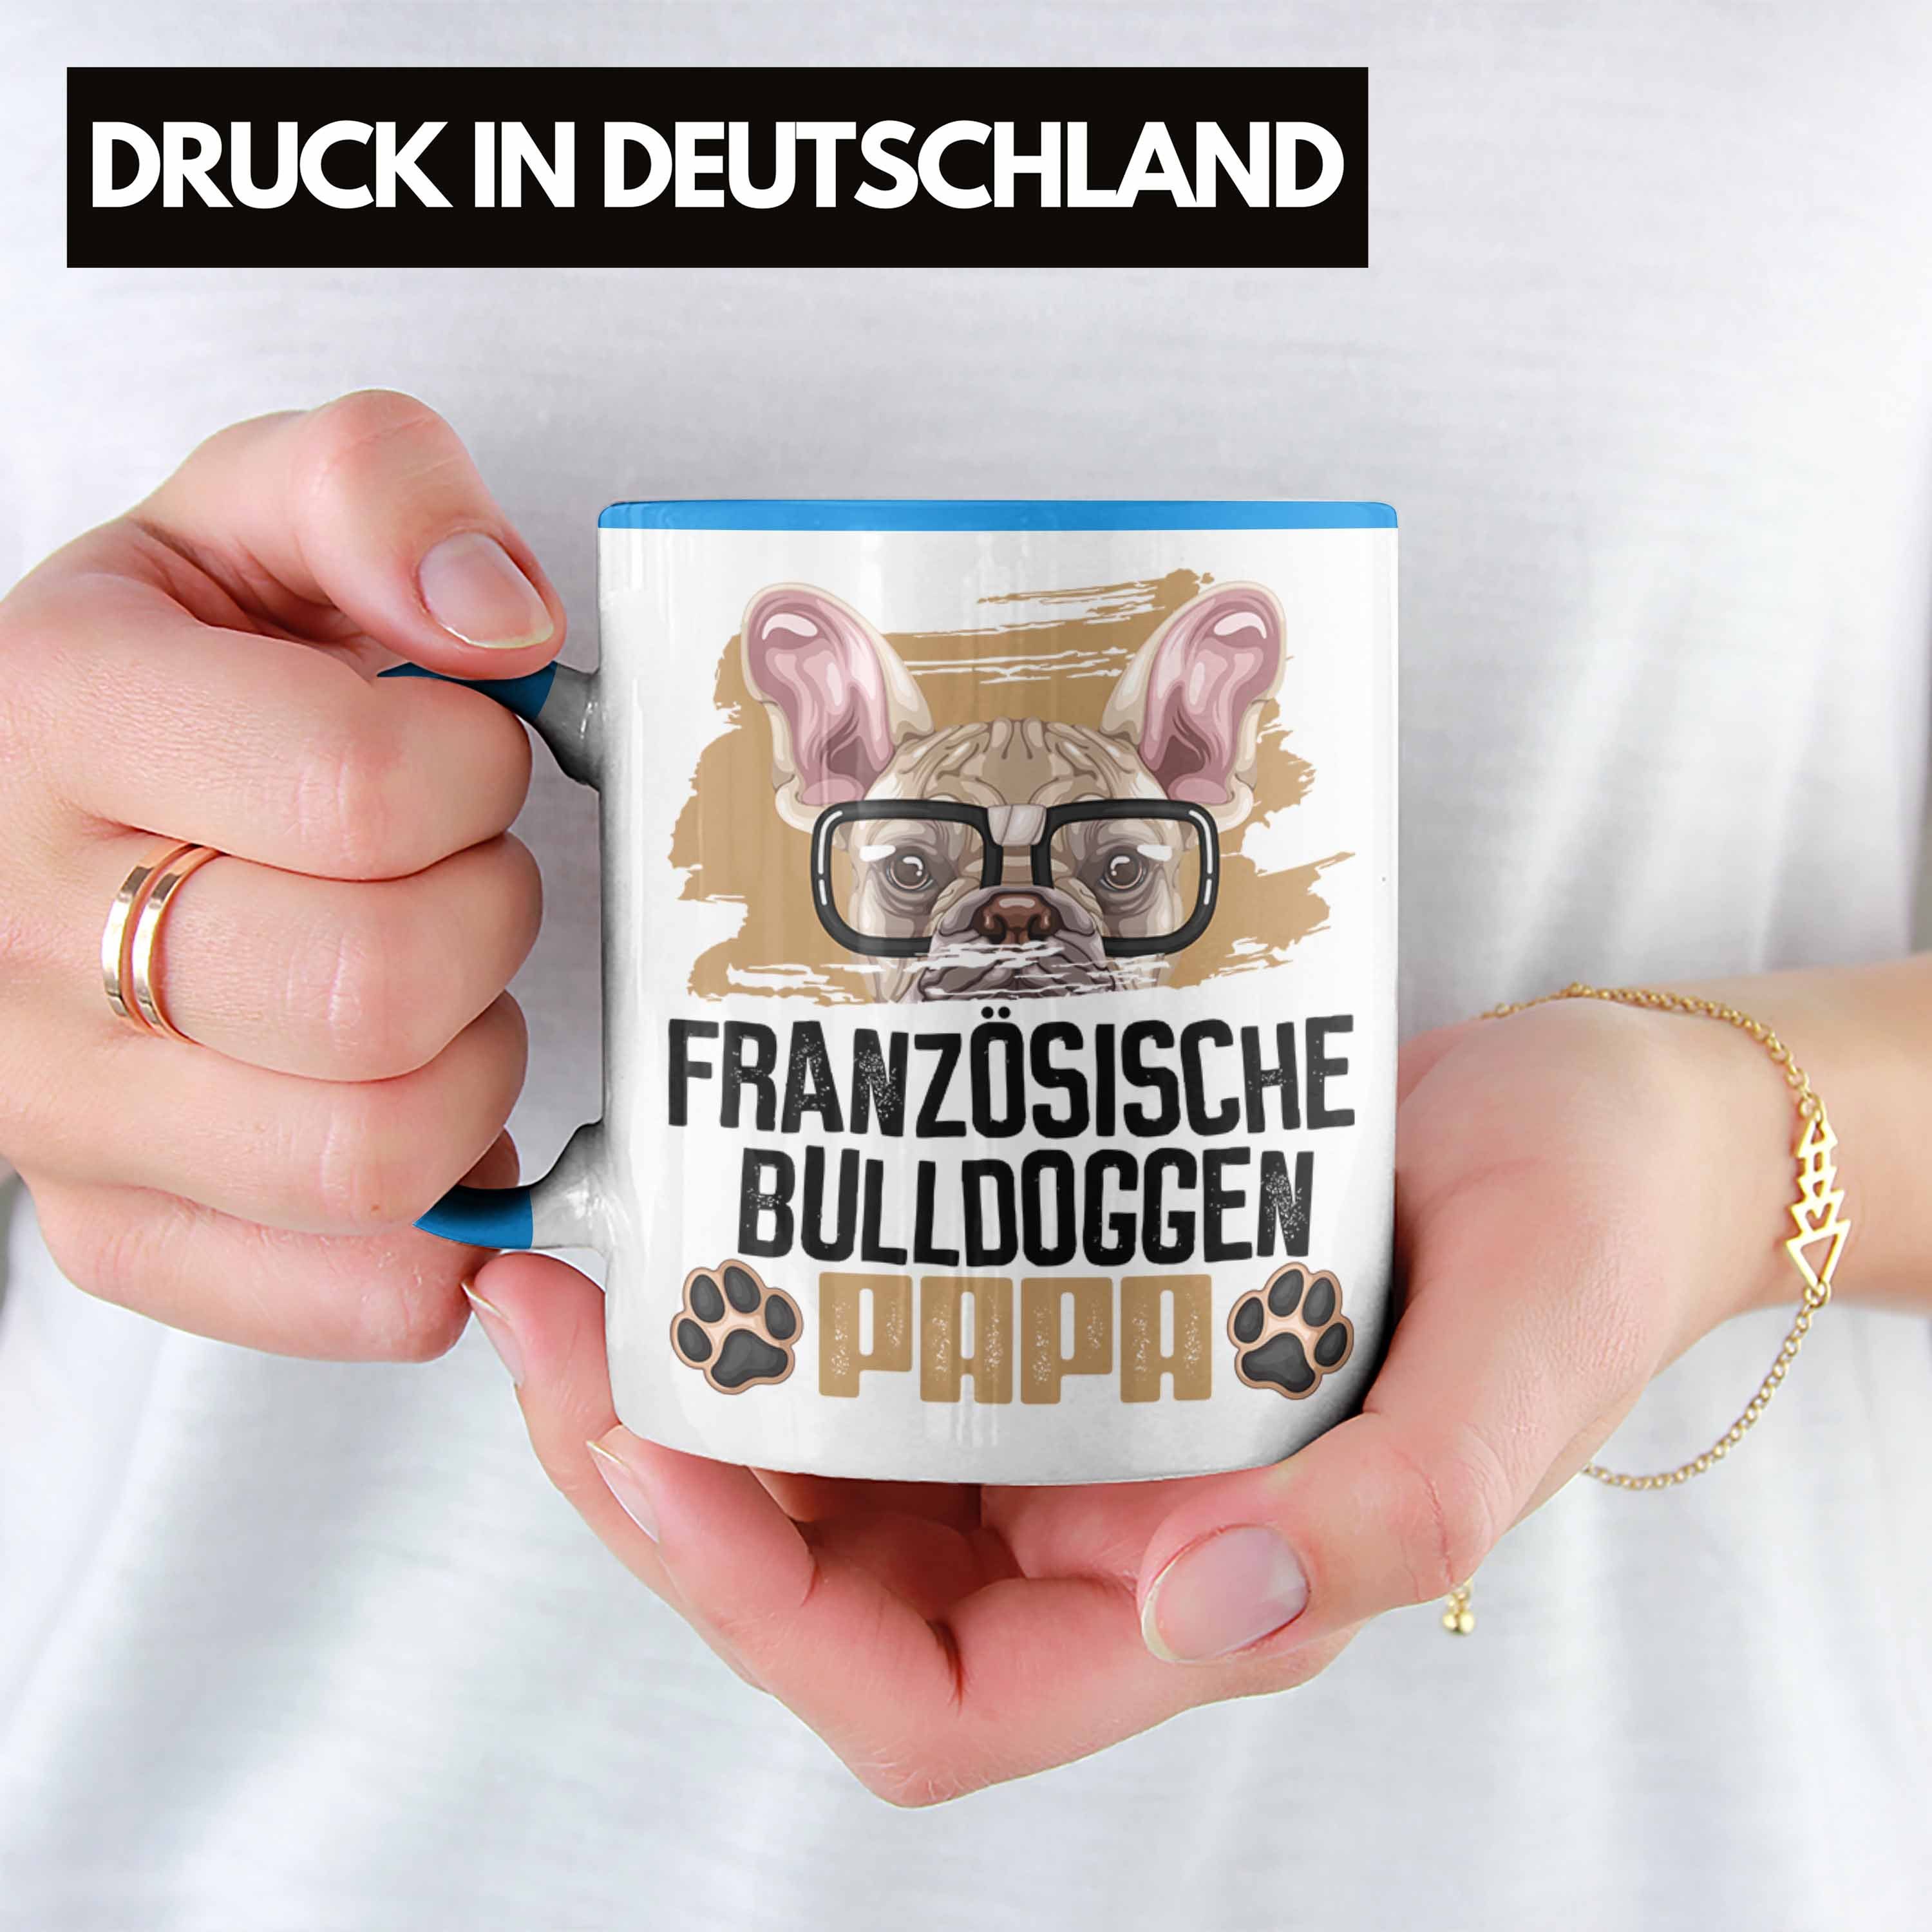 Blau Trendation Bulldogge Besitzer Papa Tasse Lustiger Spruch Tasse Französische Geschenk Ge